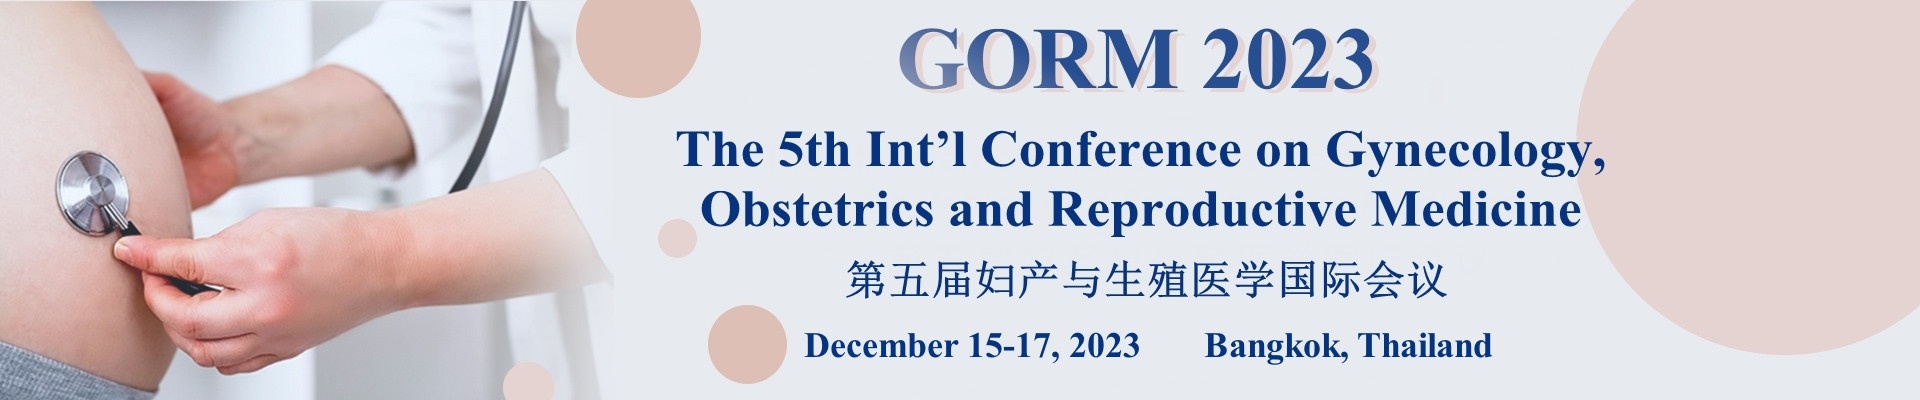 第五届妇产与生殖医学国际会议(GORM 2023)